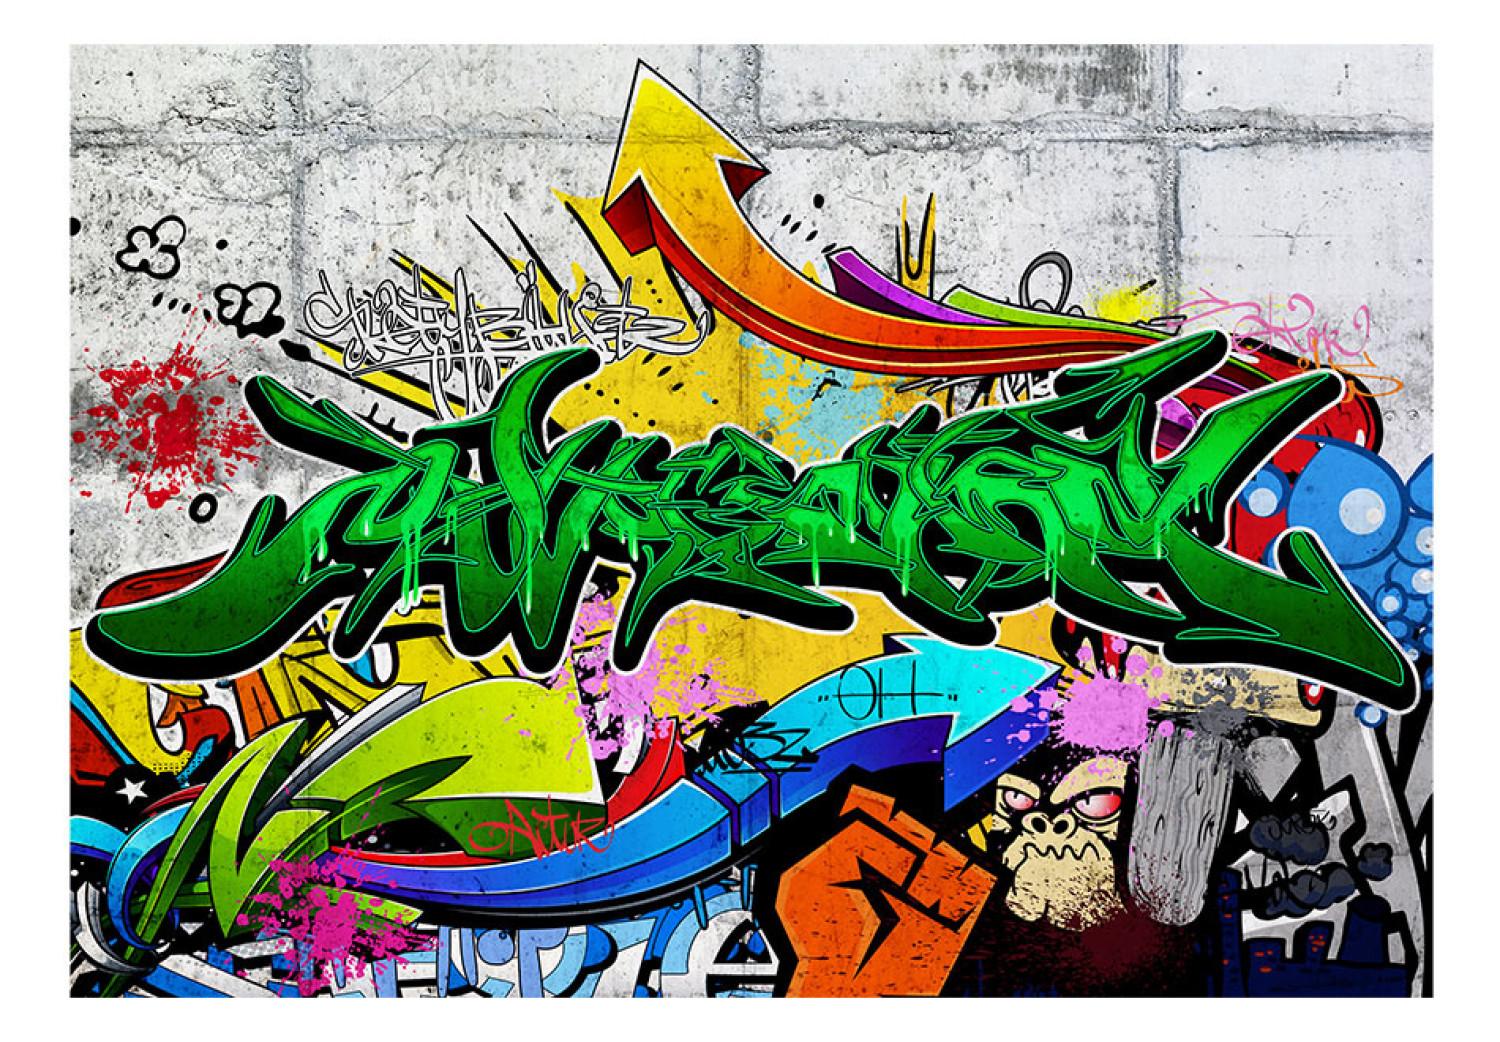 Wall Mural Urban Graffiti